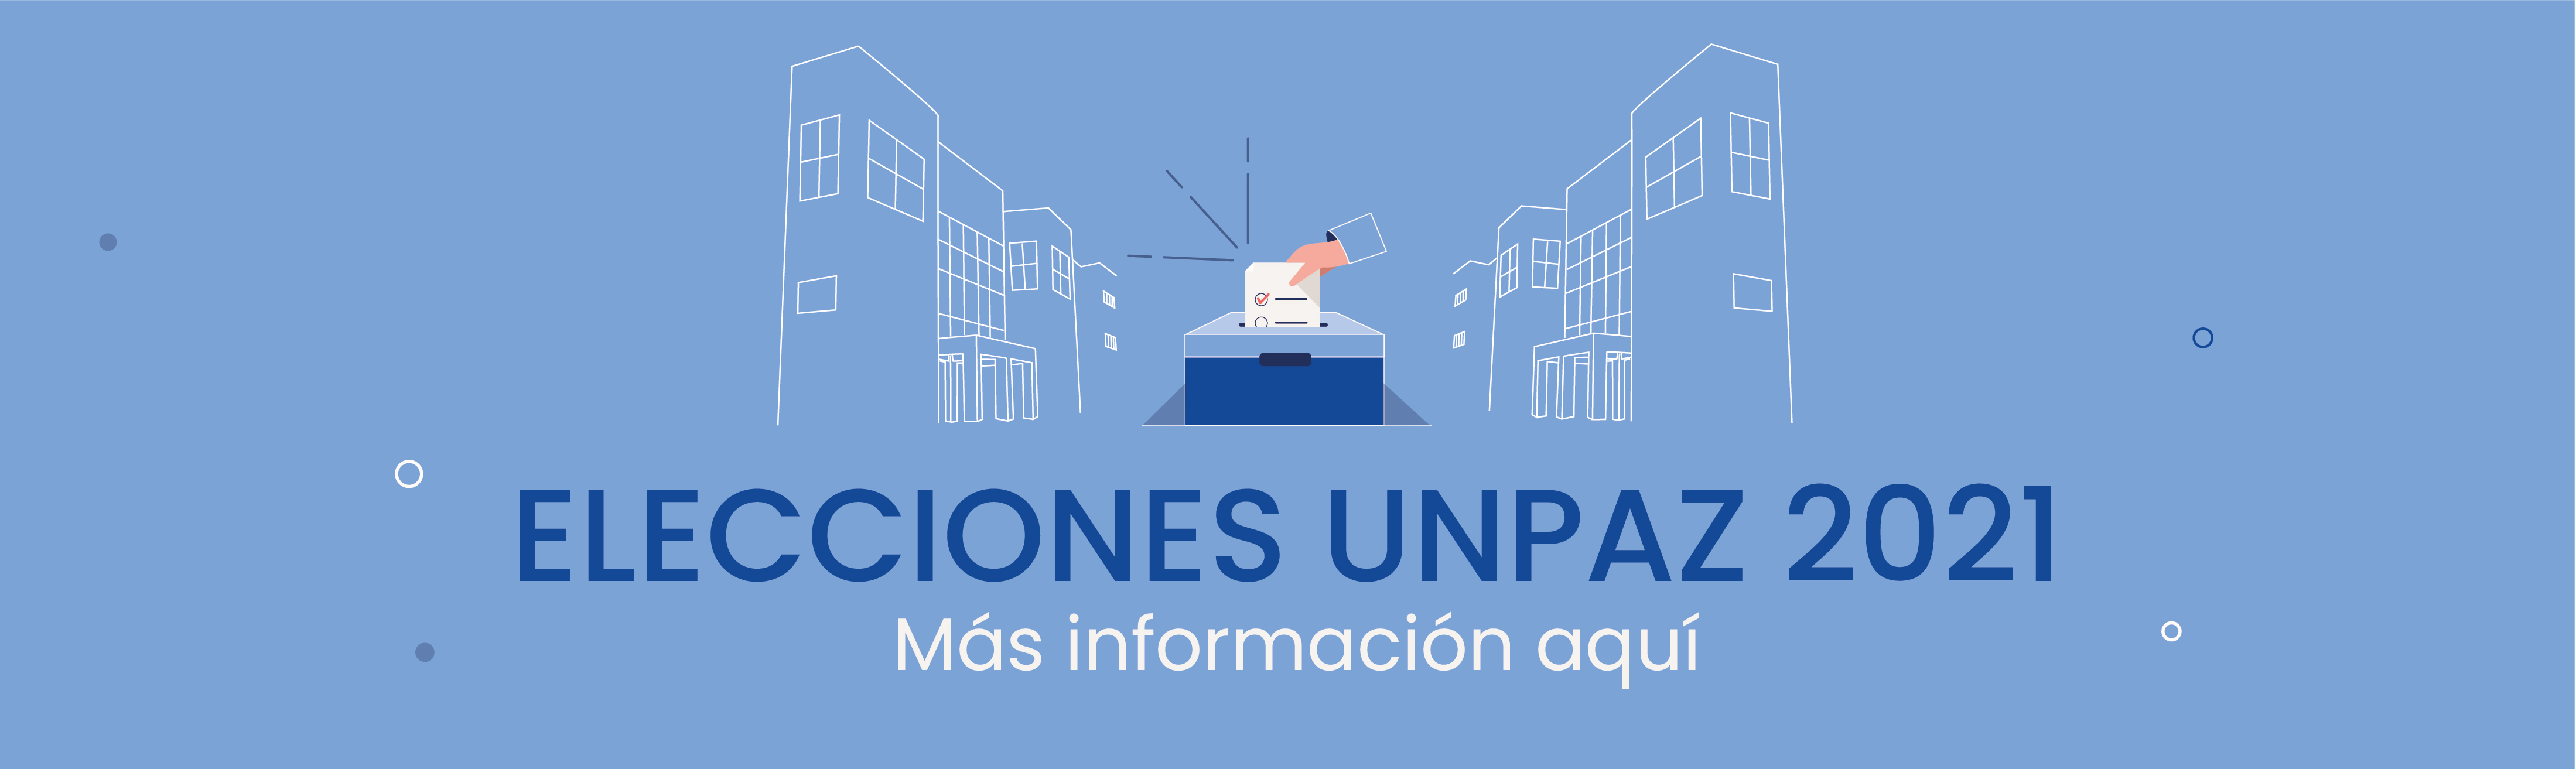 Elecciones UNPAZ 2021